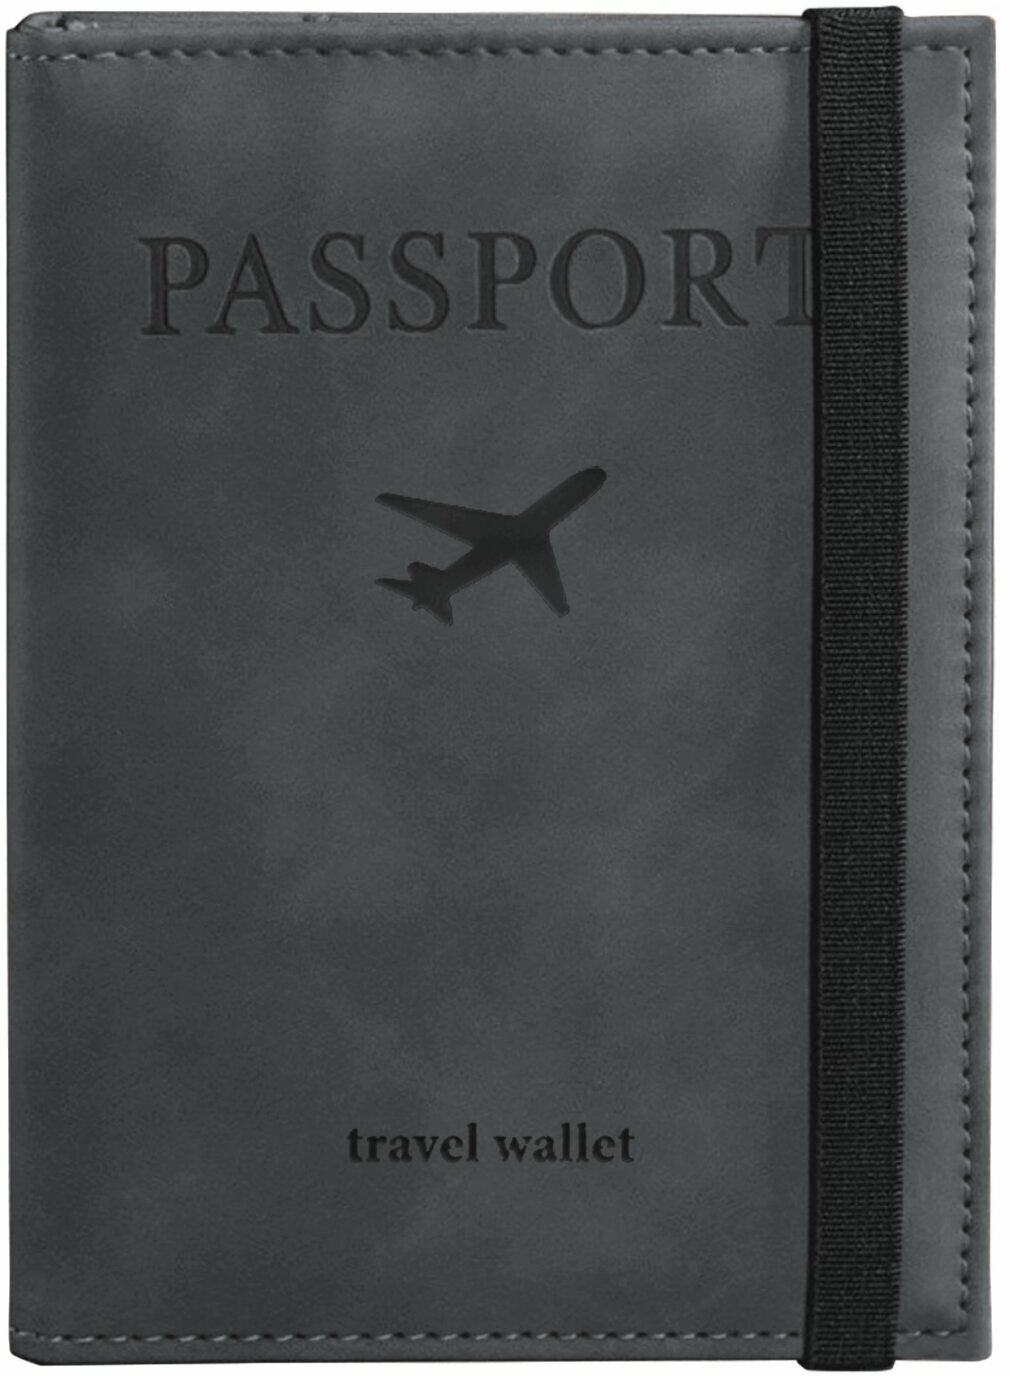 Обложка (чехол) на паспорт с карманами и резинкой мягкая экокожа Passport серая Brauberg 238203